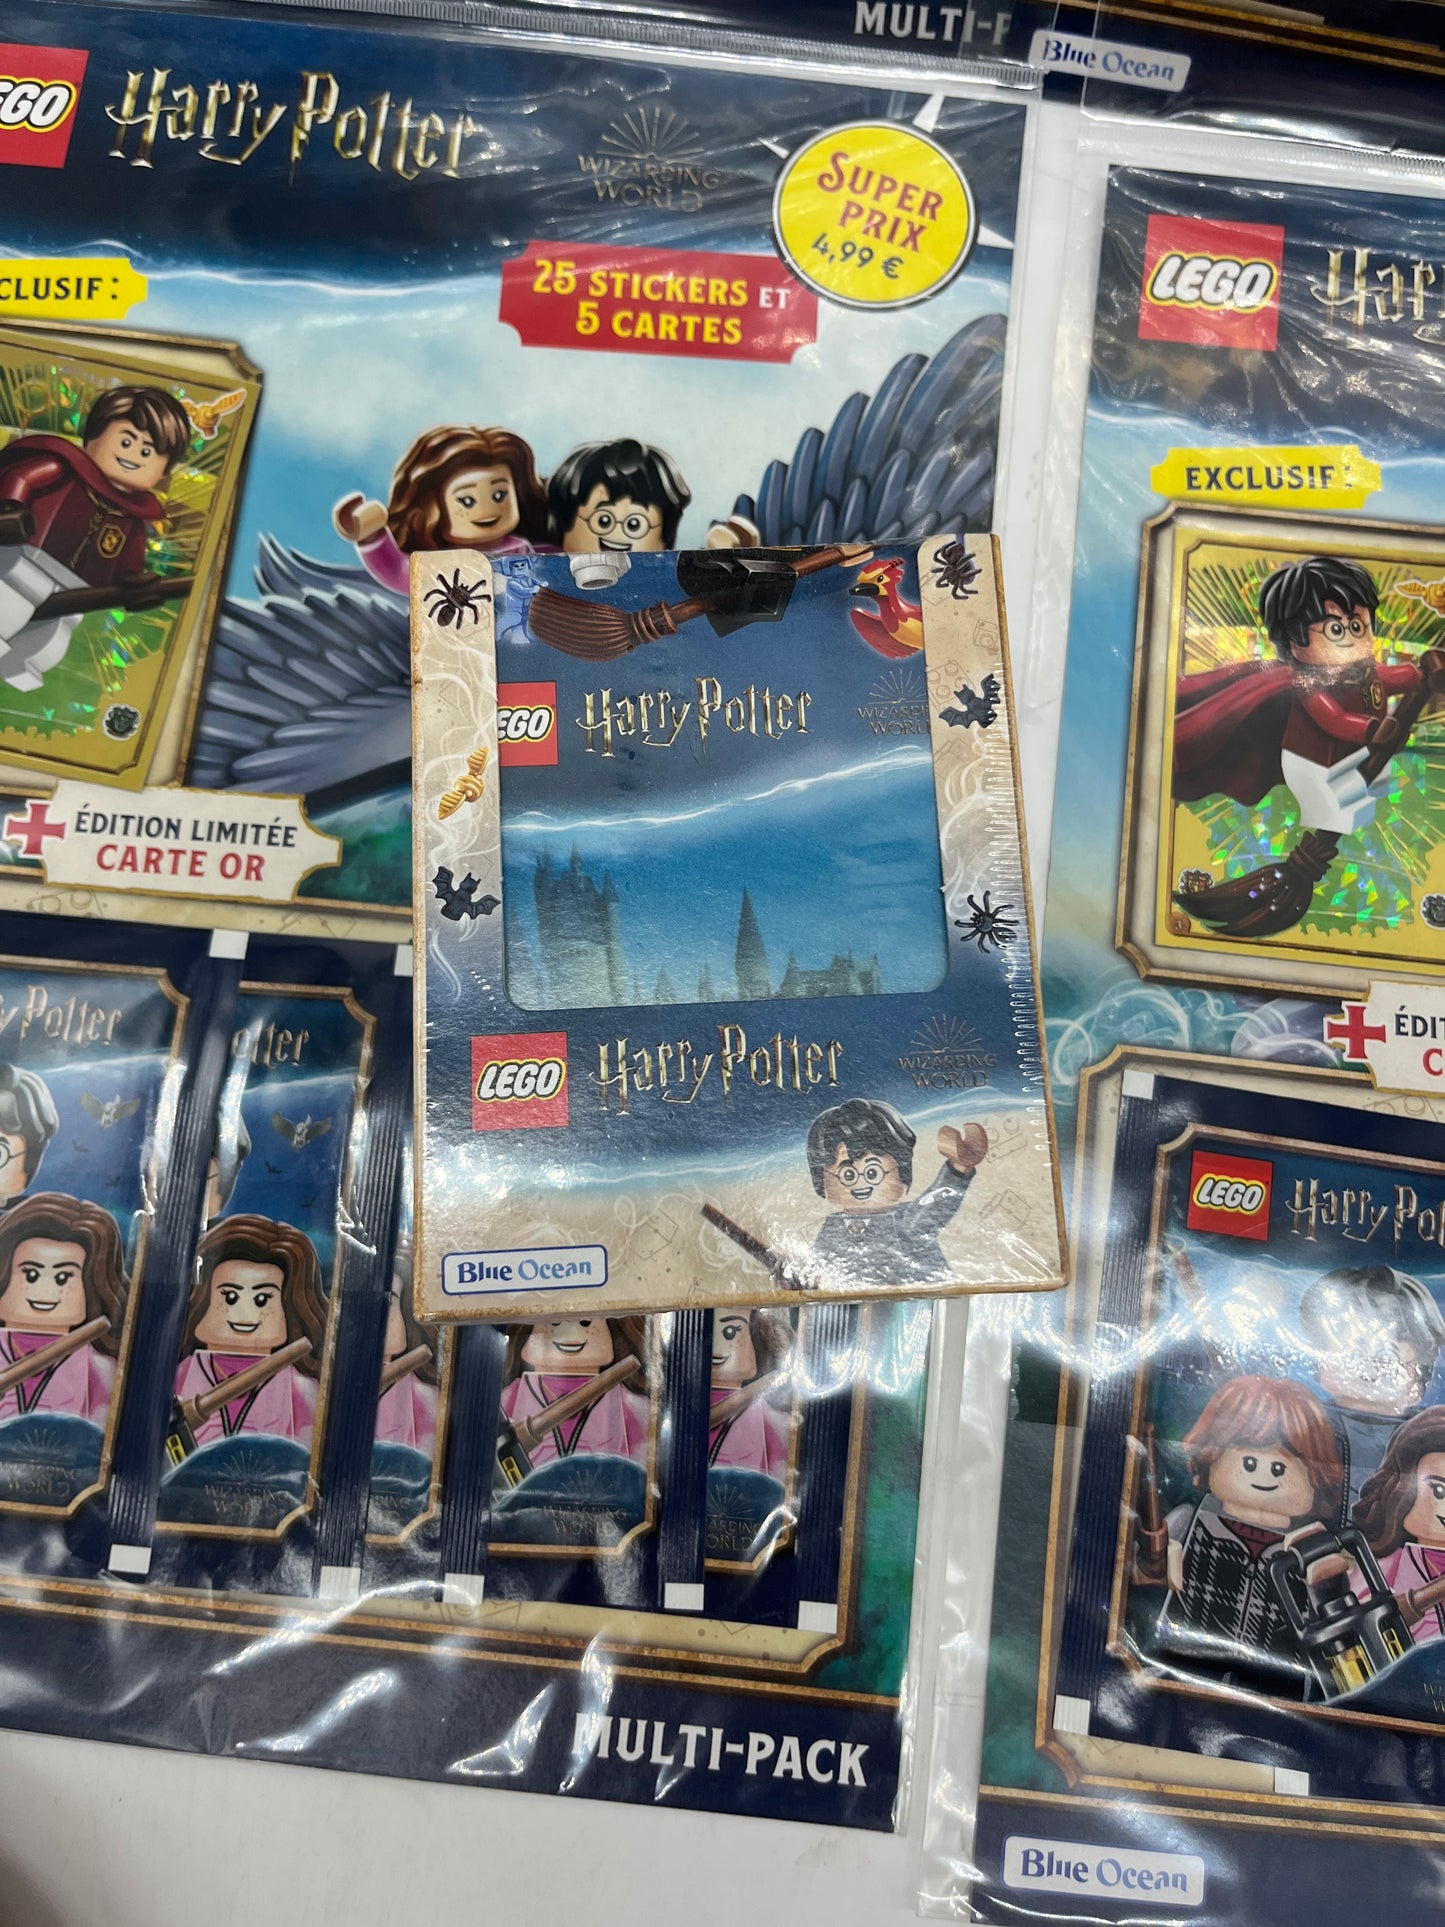 Lot de 4 Multipacks et un display de 25 pochettes de 5 stickers Lego Harry Potter Stickers avec carte édition limitée Neuf sous blister